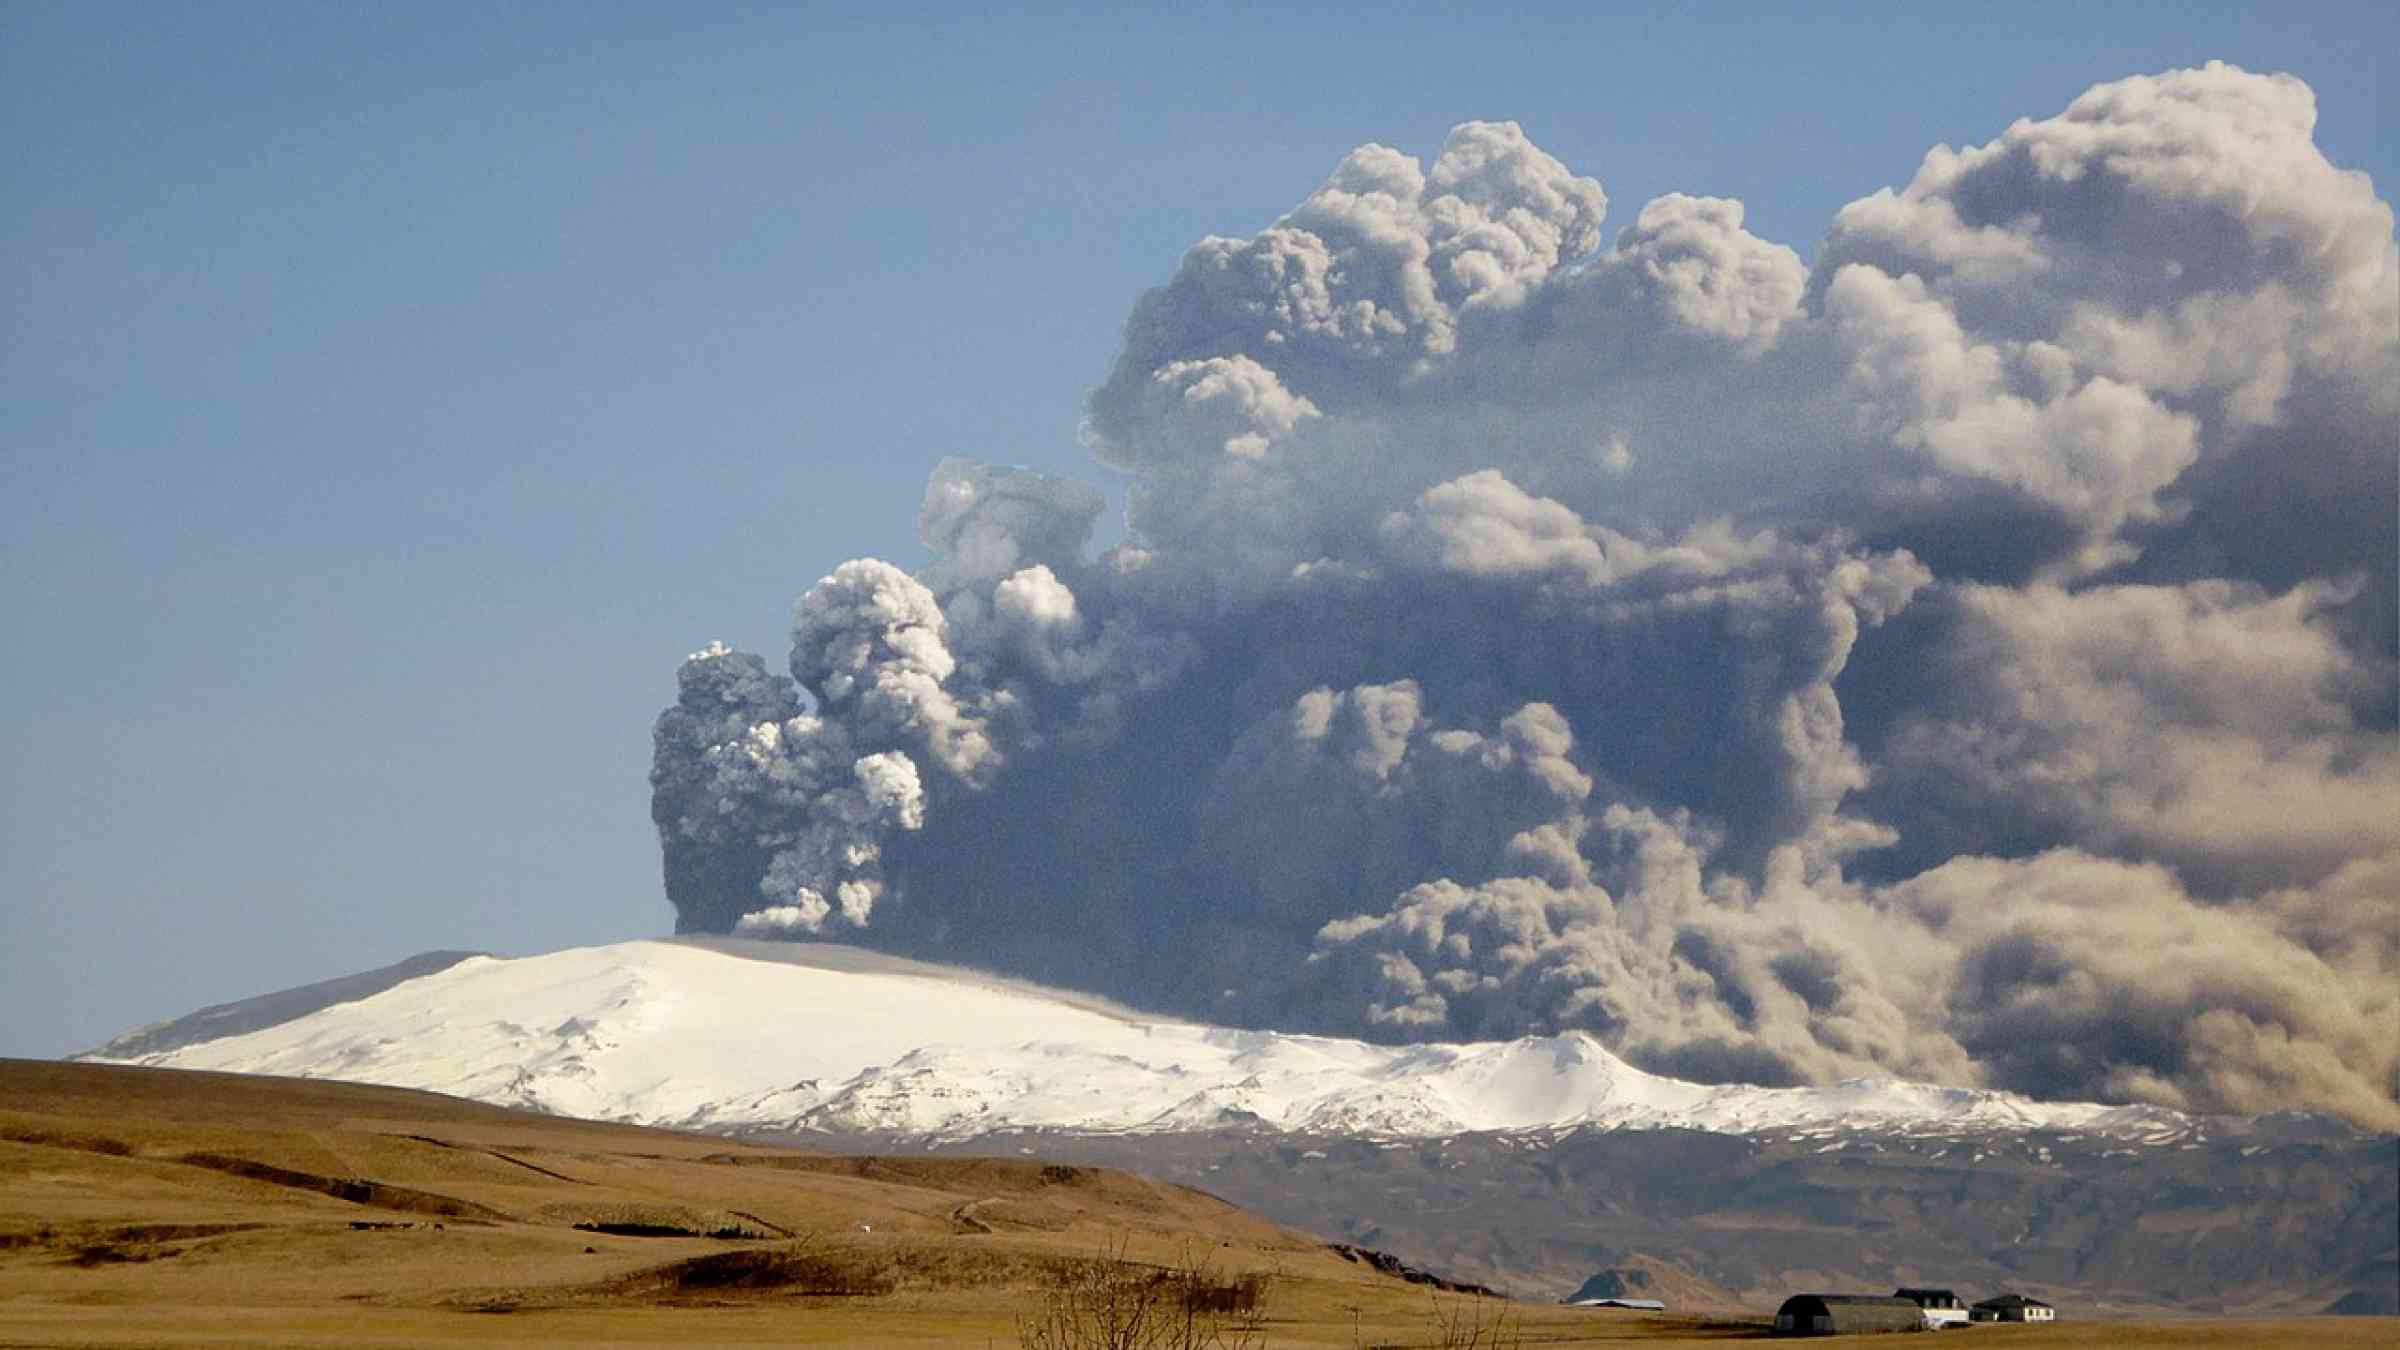 Eruption at Eyjafjallajökull volcano on April 17, 2010